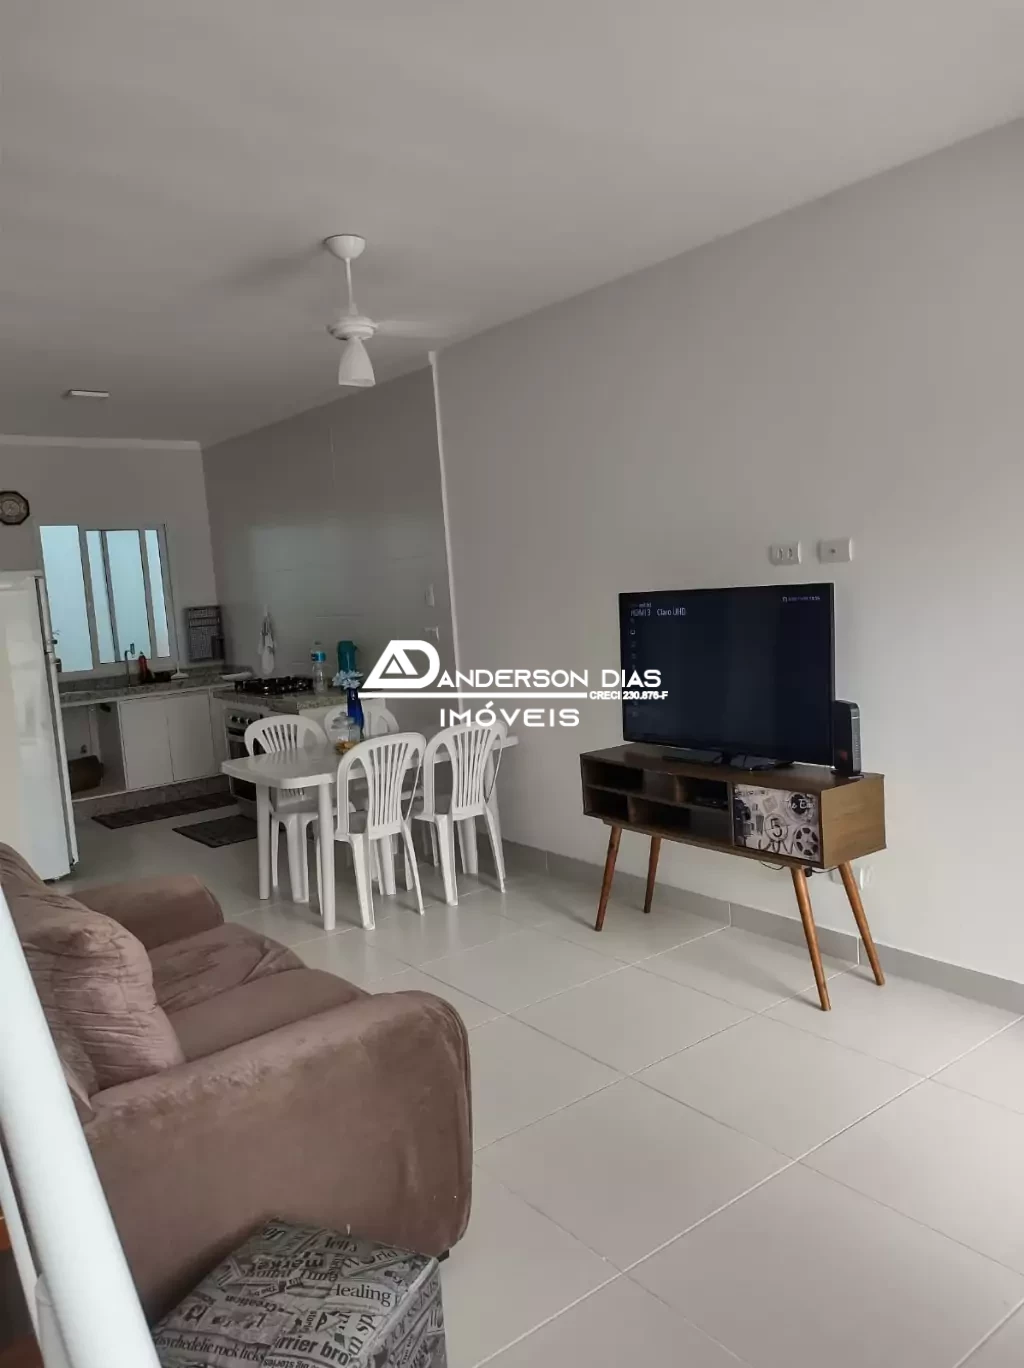 Casa com 2 dormitórios, próximo a praia, com 103m² á venda  por R$ 455 mil - Massaguaçu - Caraguatatuba-SP